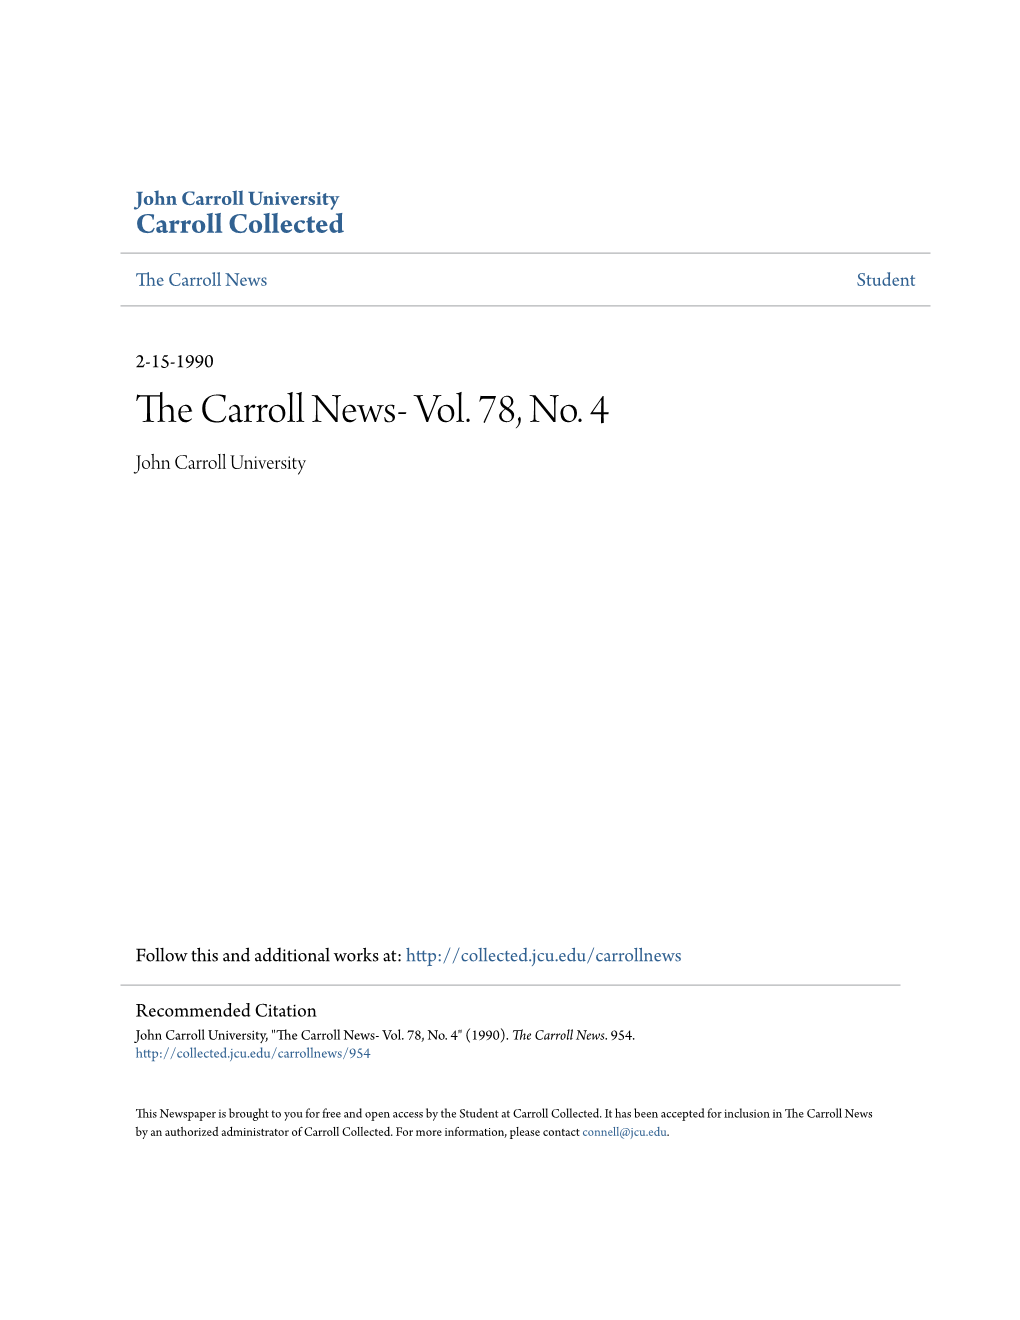 The Carroll News- Vol. 78, No. 4